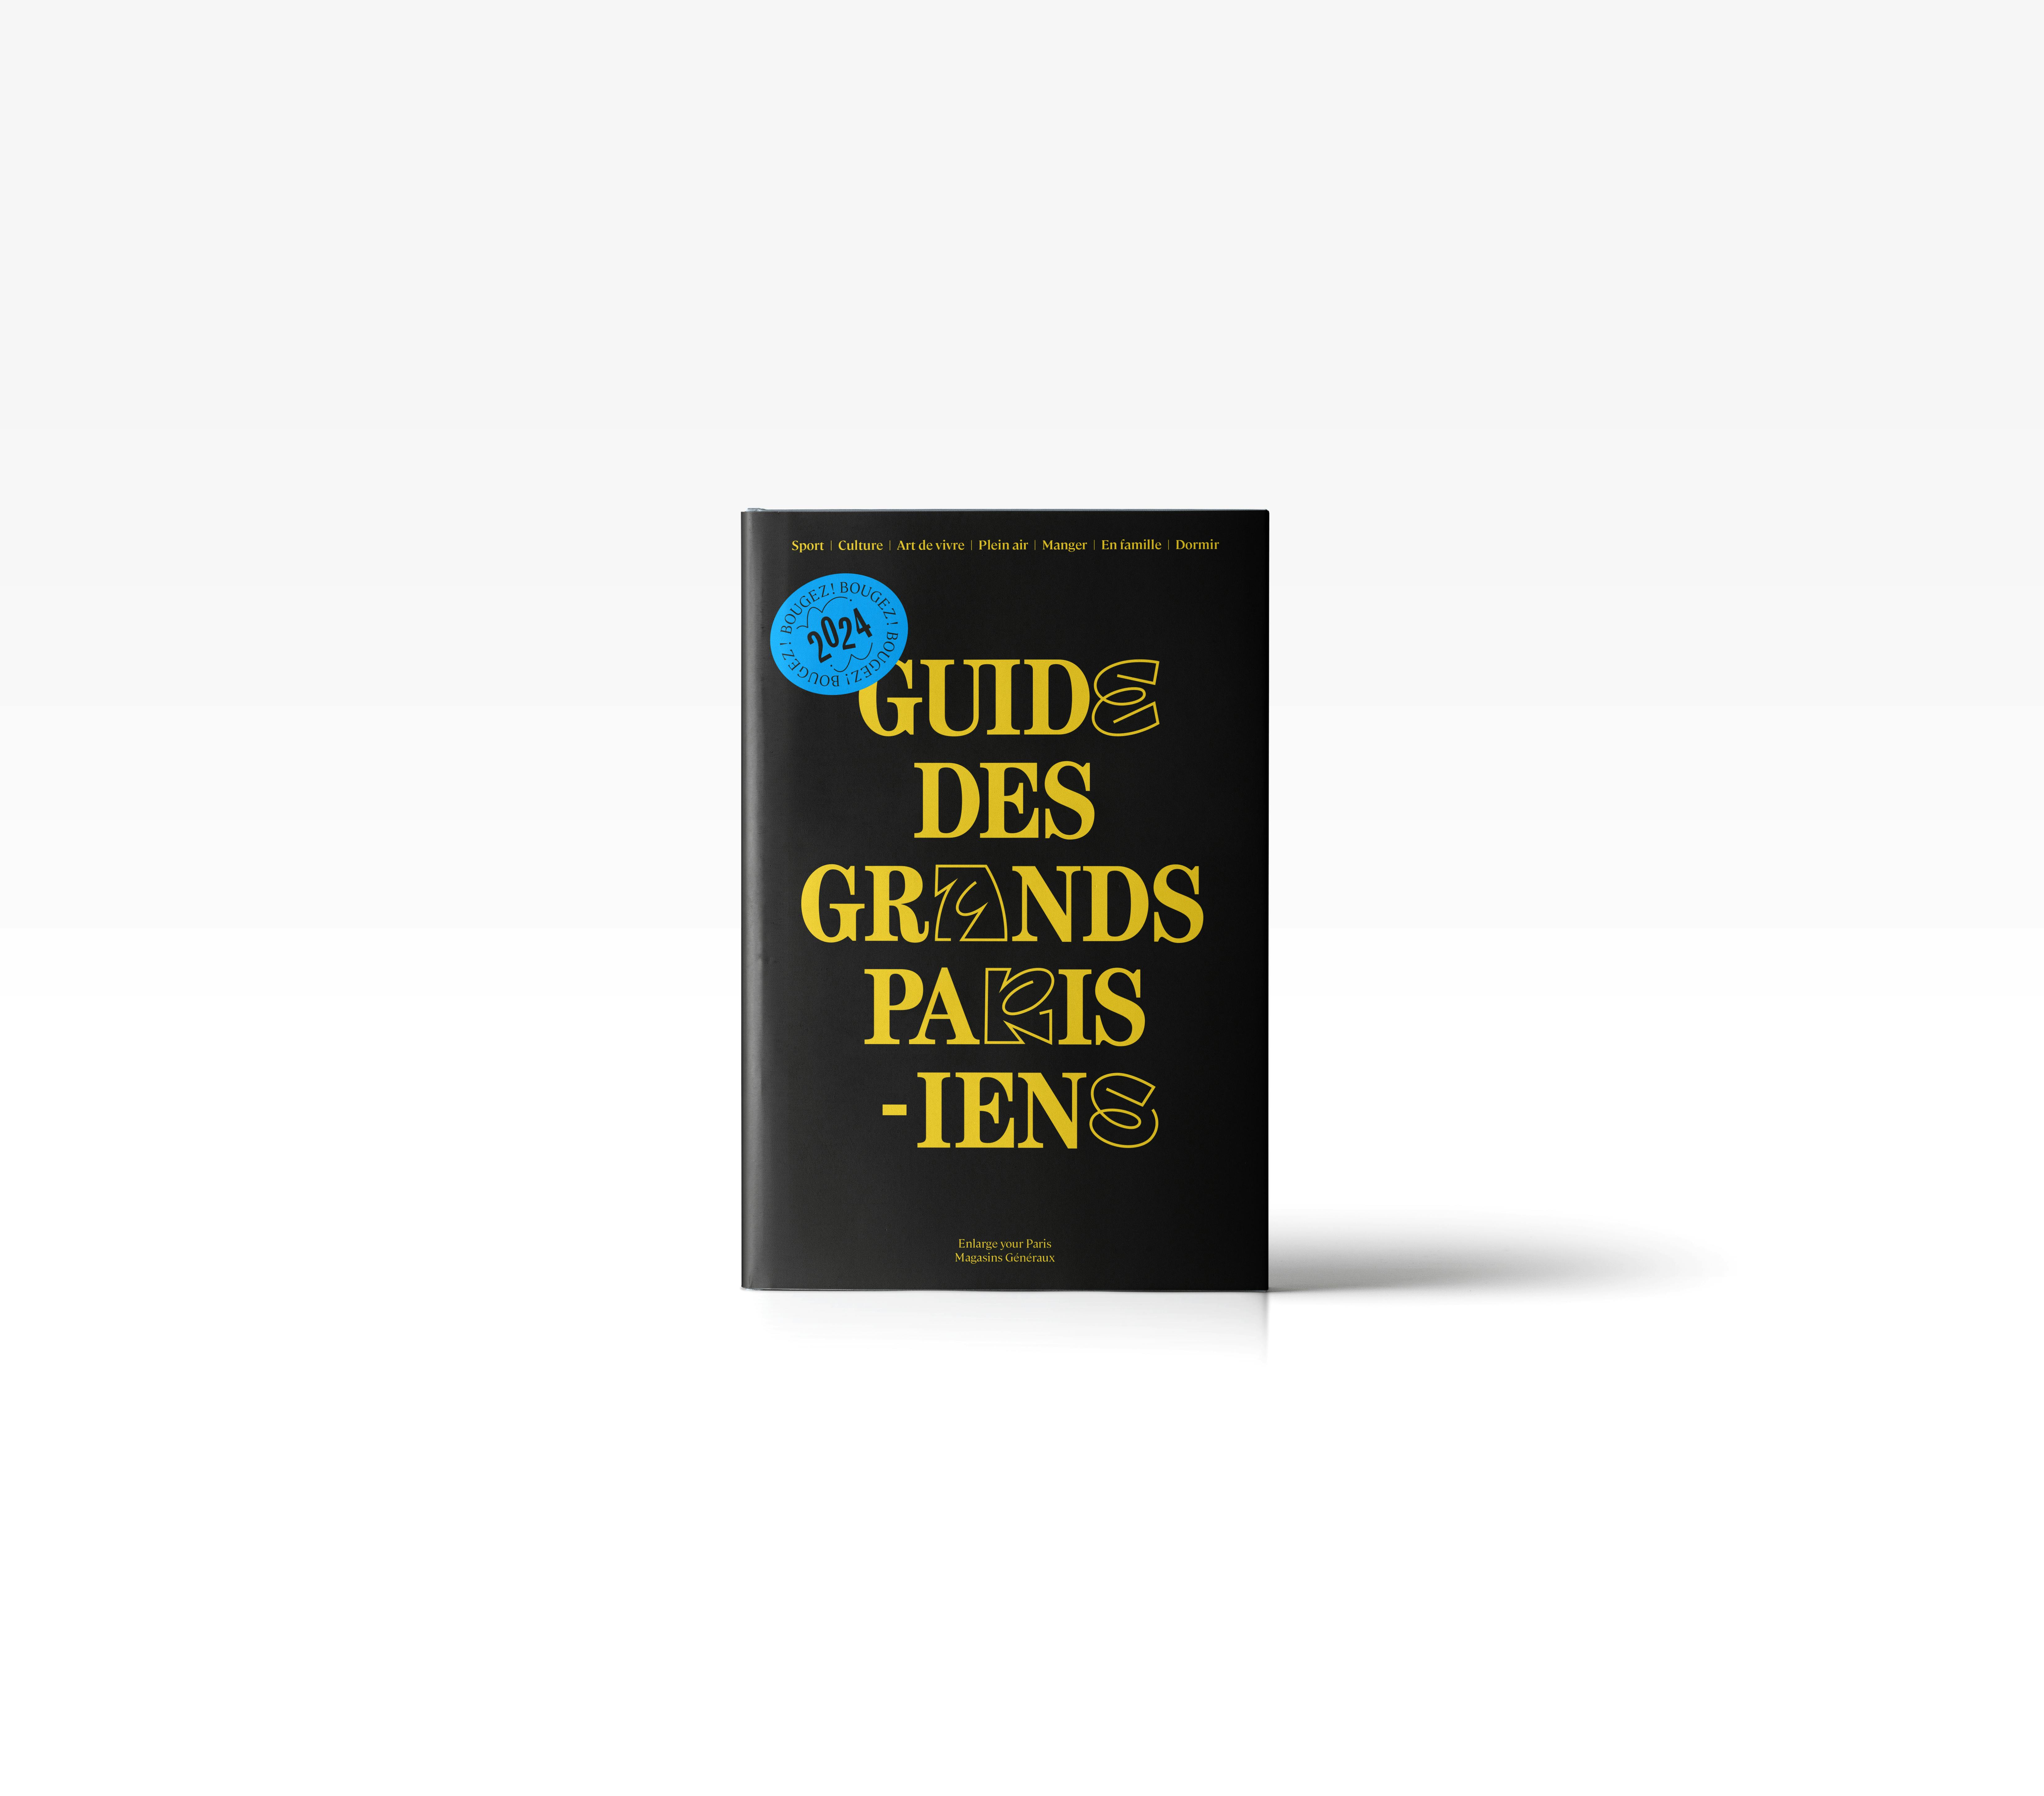 Guide des Grands Parisien, livre, édition, Magasins Généraux, Pantin, Grand Paris, territoire, touriste, guide touristique